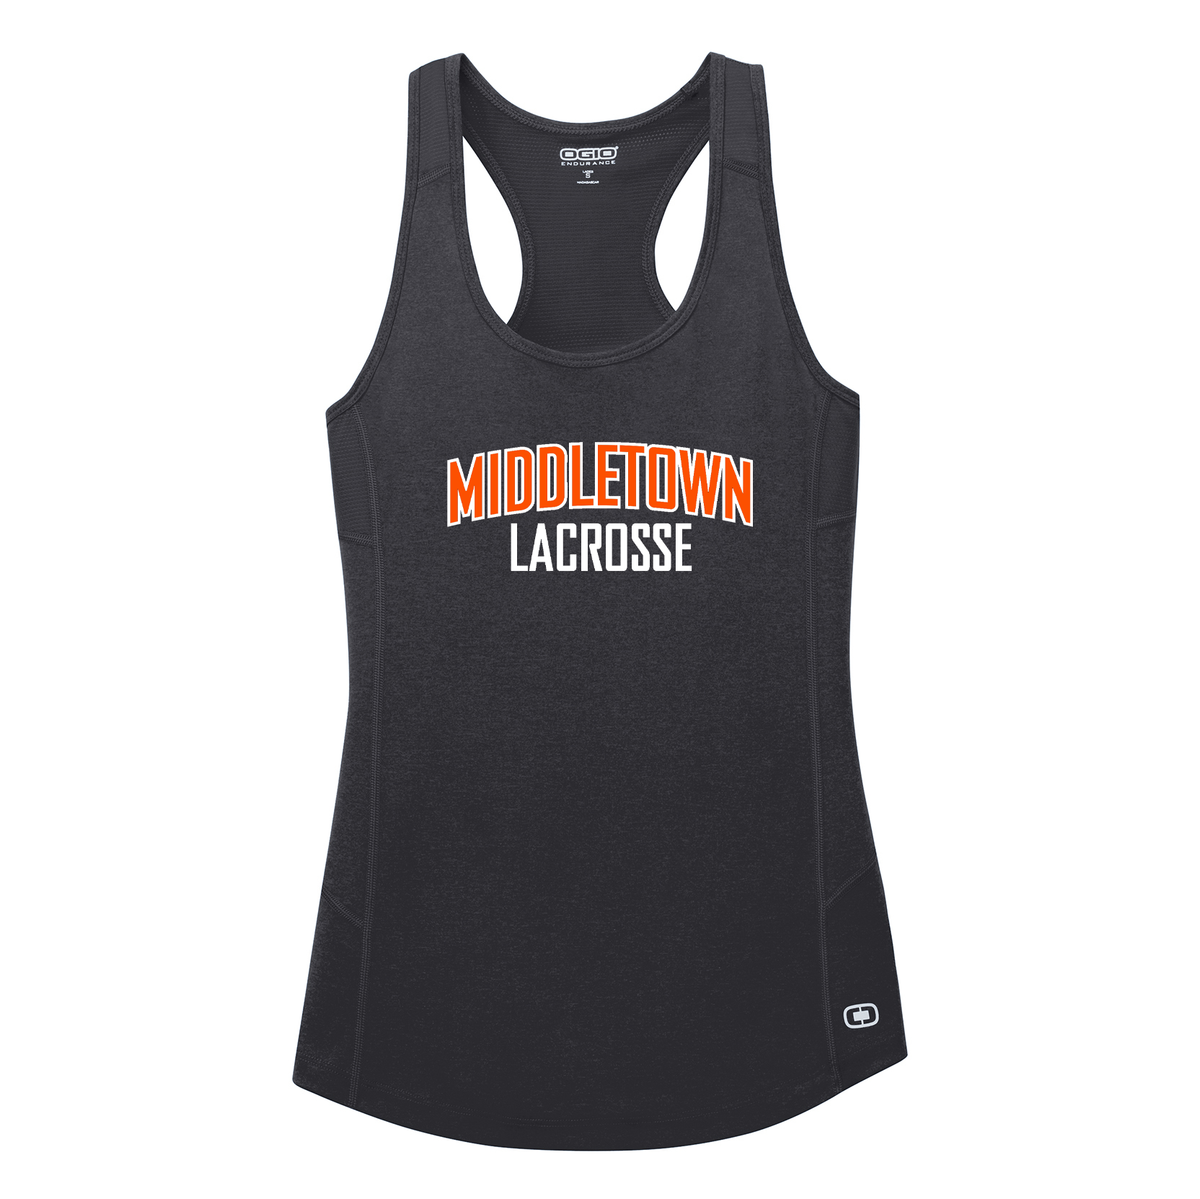 Middletown Lacrosse Endurance Ladies Racerback Tank